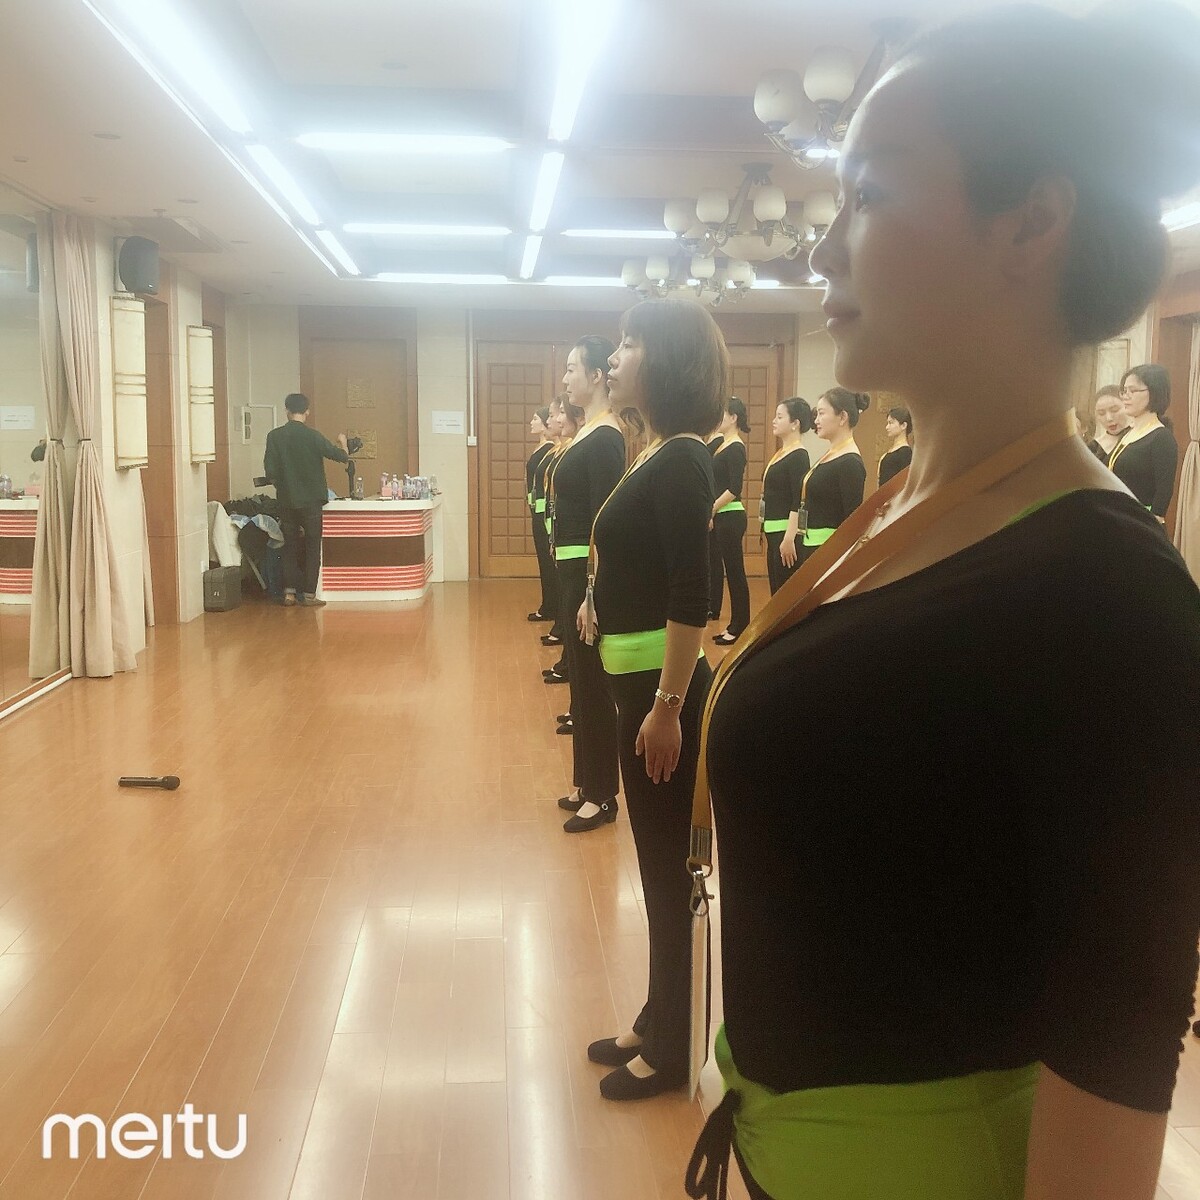 苏州舞蹈工作室,中国舞蹈家沈培艺:苏州新洲幼儿园很好